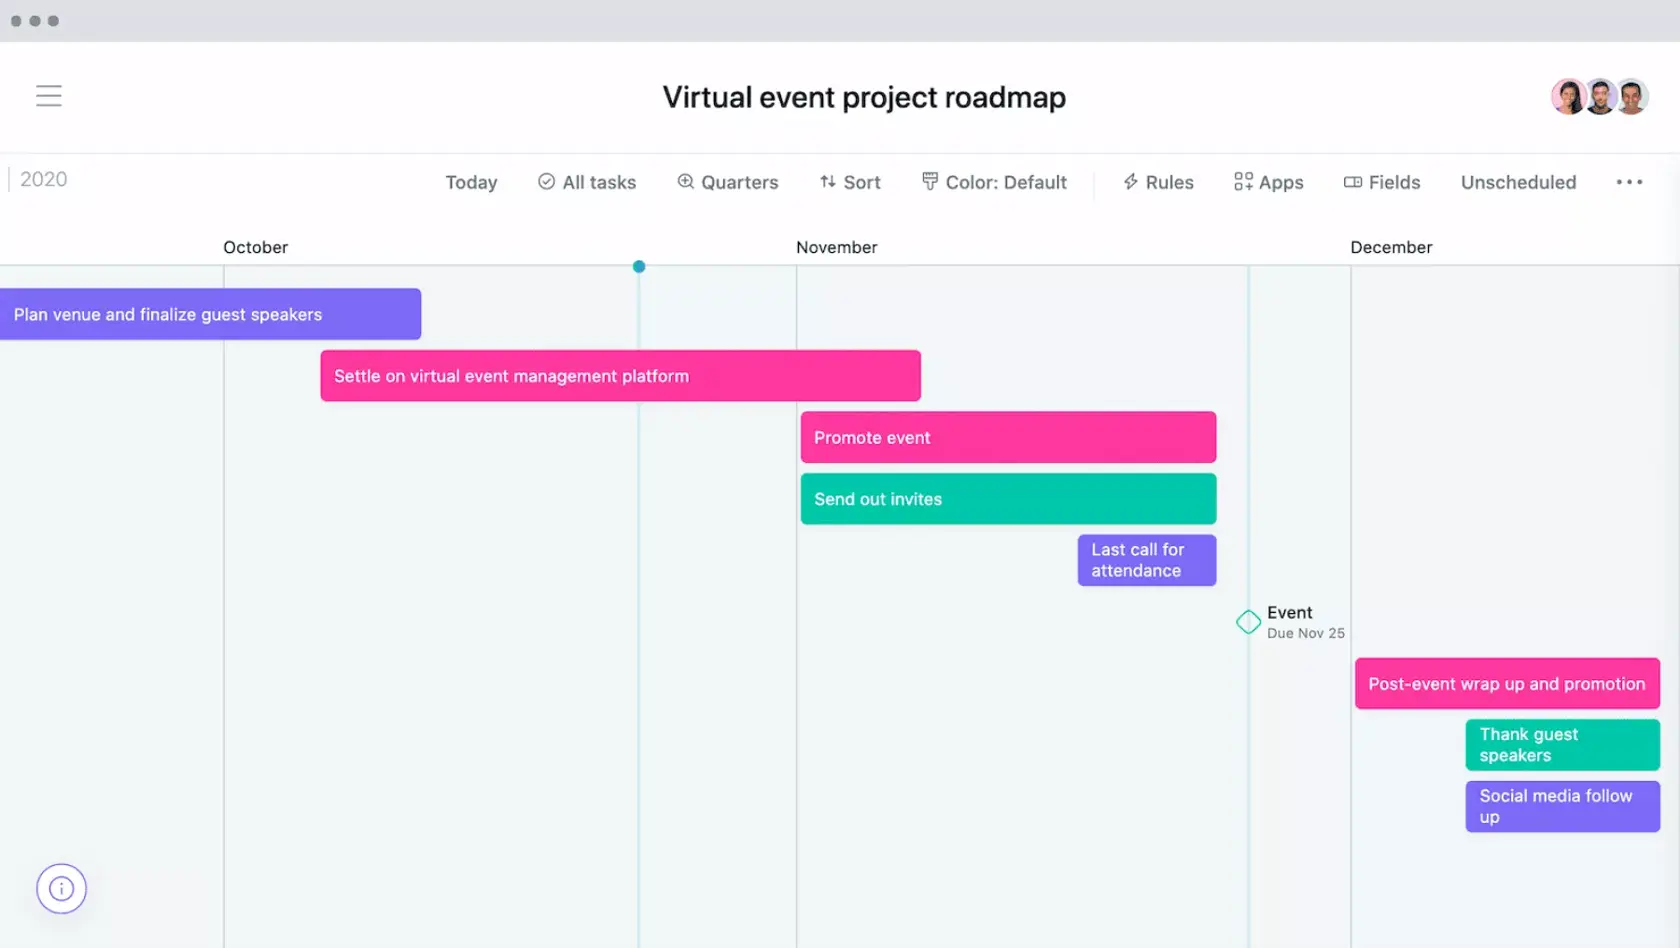 [타임라인 보기] Asana 간트 차트 타임라인에서 가상 이벤트 프로젝트 로드맵 예시